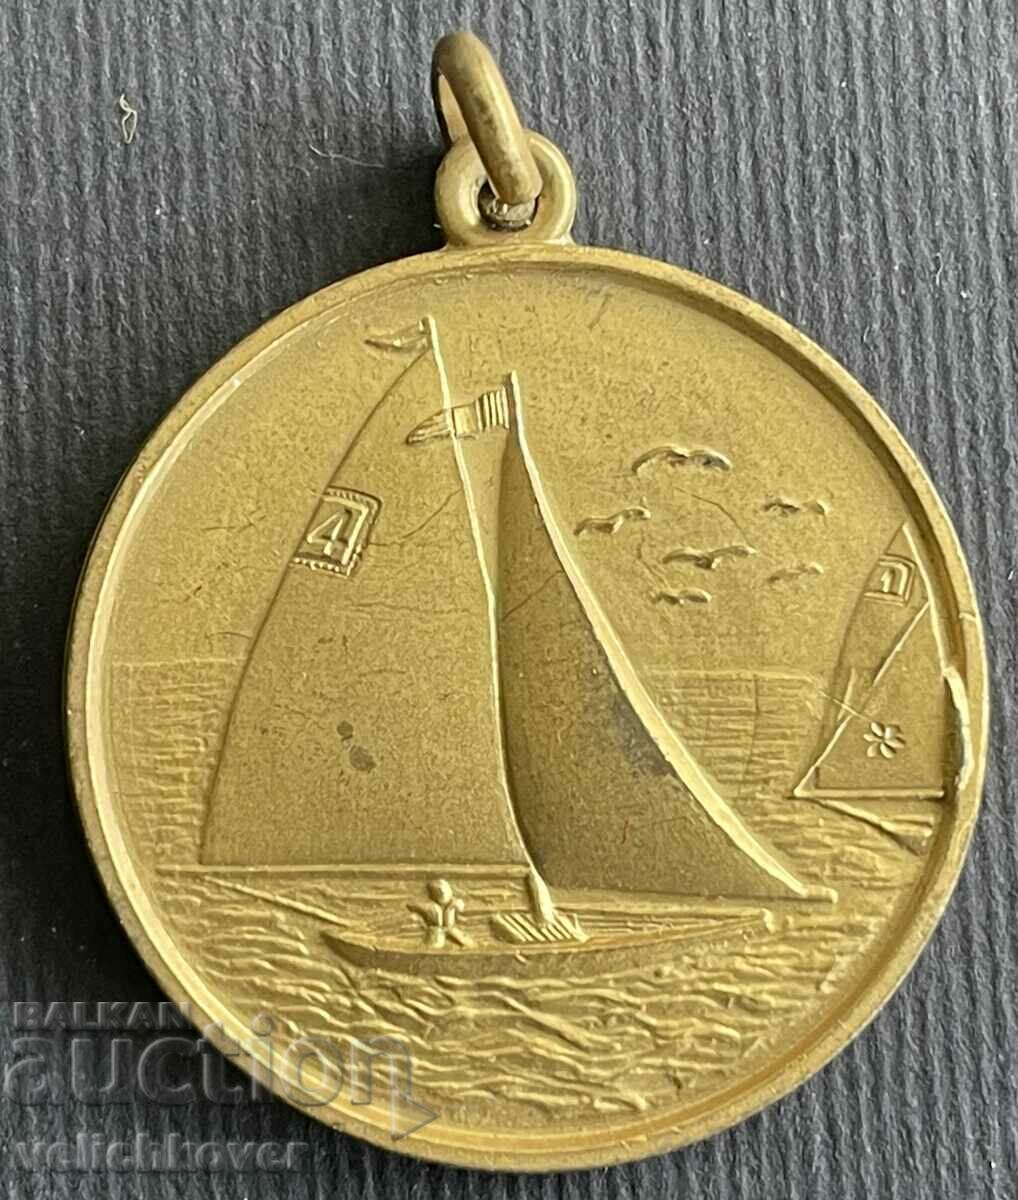 36648 Италия медал за участие в яхтена регата 2000г.